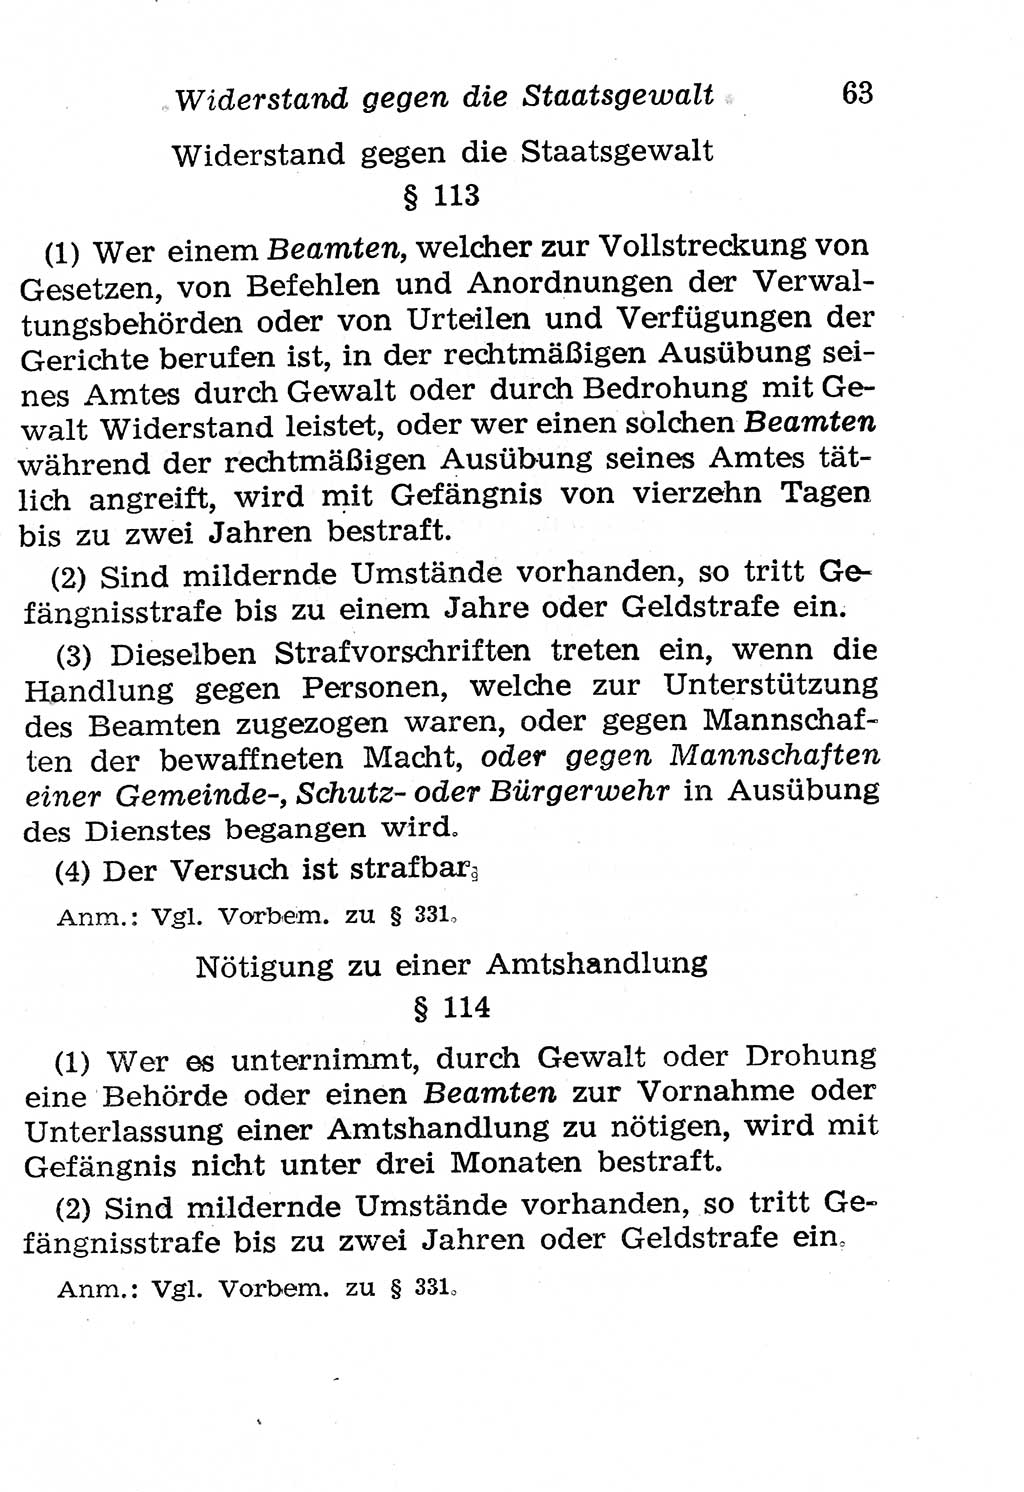 Strafgesetzbuch (StGB) und andere Strafgesetze [Deutsche Demokratische Republik (DDR)] 1958, Seite 63 (StGB Strafges. DDR 1958, S. 63)